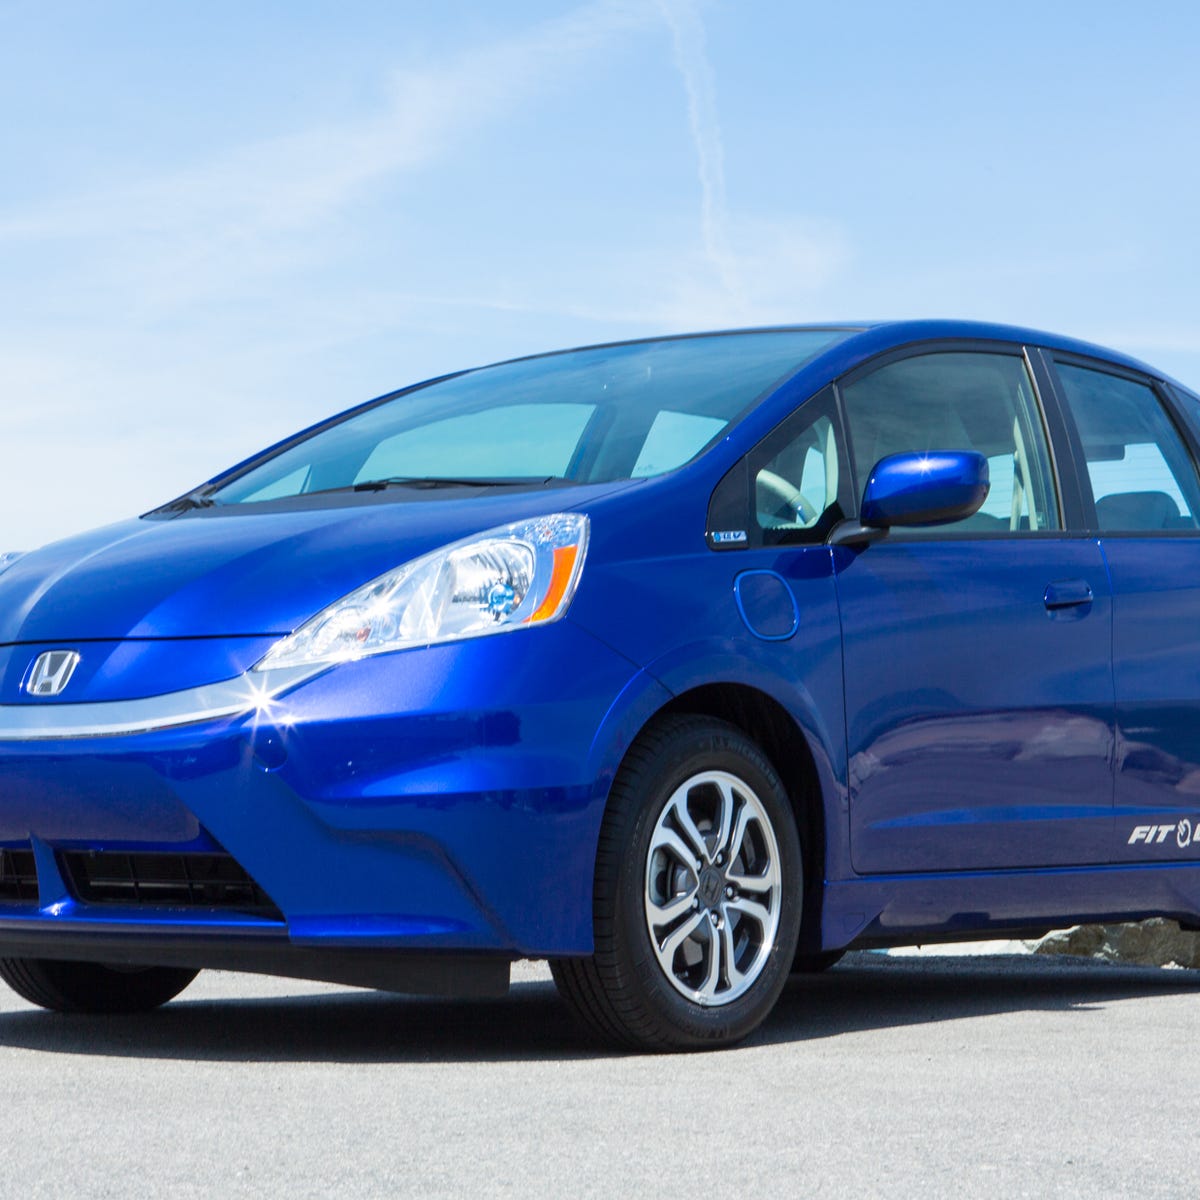 2013 Honda Fit EV review: Honda Fit EV's cabin tech belies efficient,  electric drivetrain - CNET